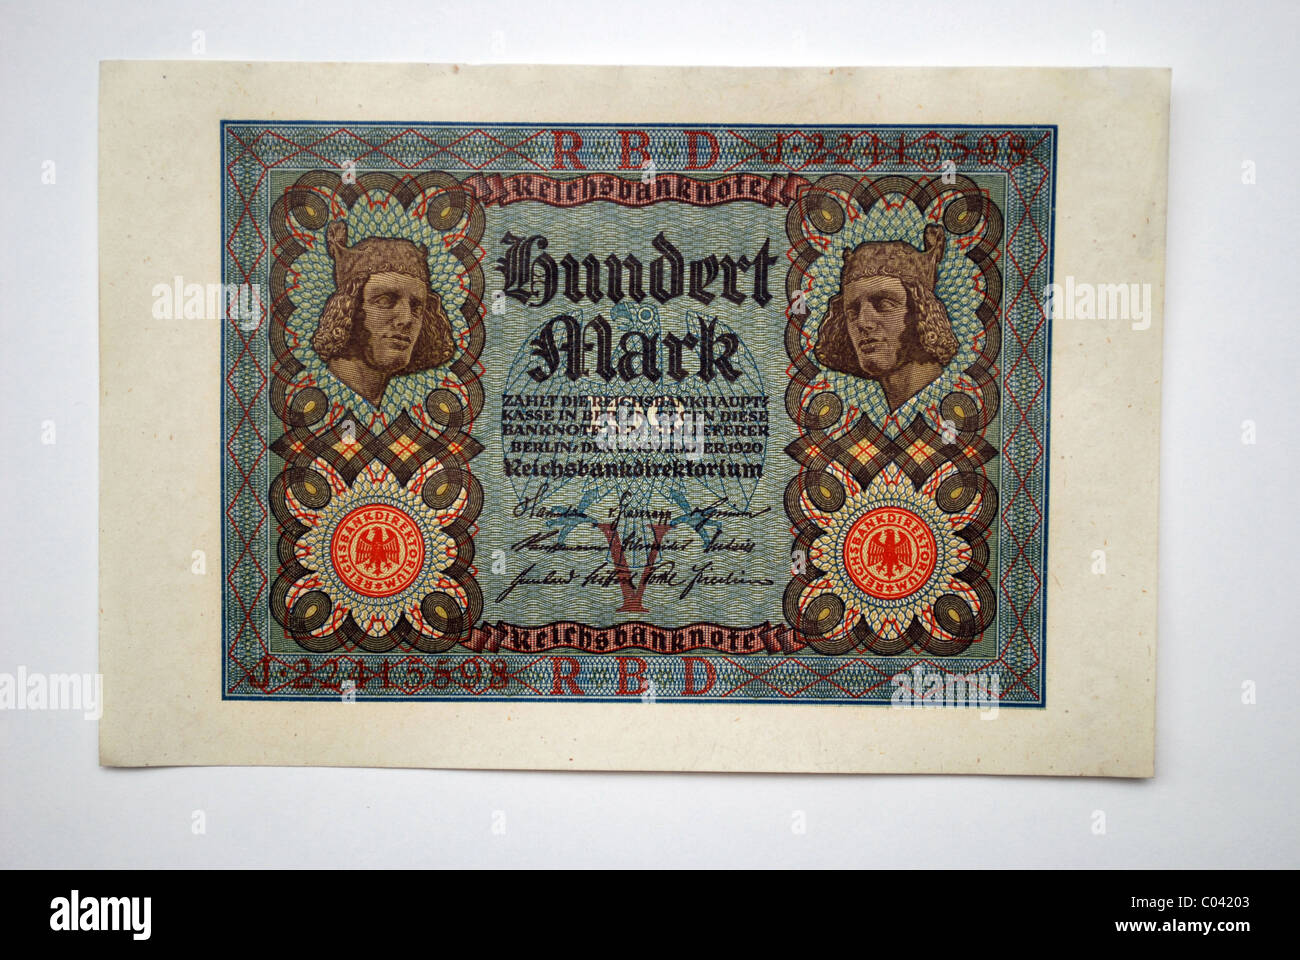 German paper money, one hundred 'Deutsche Reichsmark' from 1920. Stock Photo